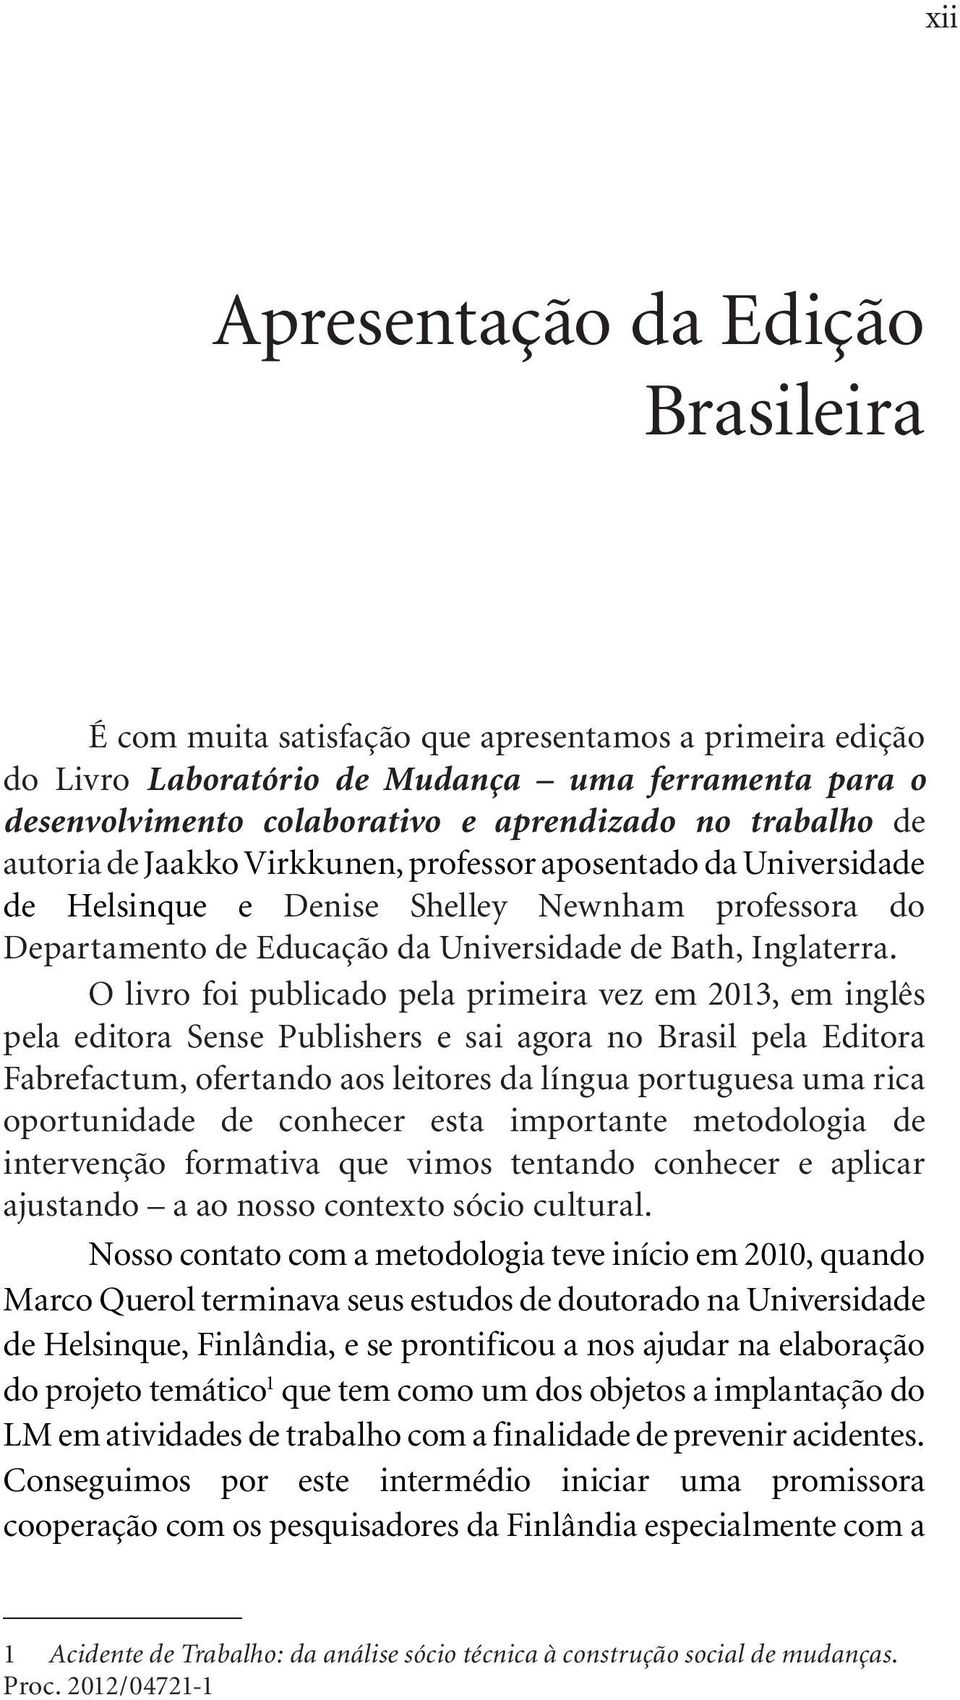 O livro foi publicado pela primeira vez em 2013, em inglês pela editora Sense Publishers e sai agora no Brasil pela Editora Fabrefactum, ofertando aos leitores da língua portuguesa uma rica